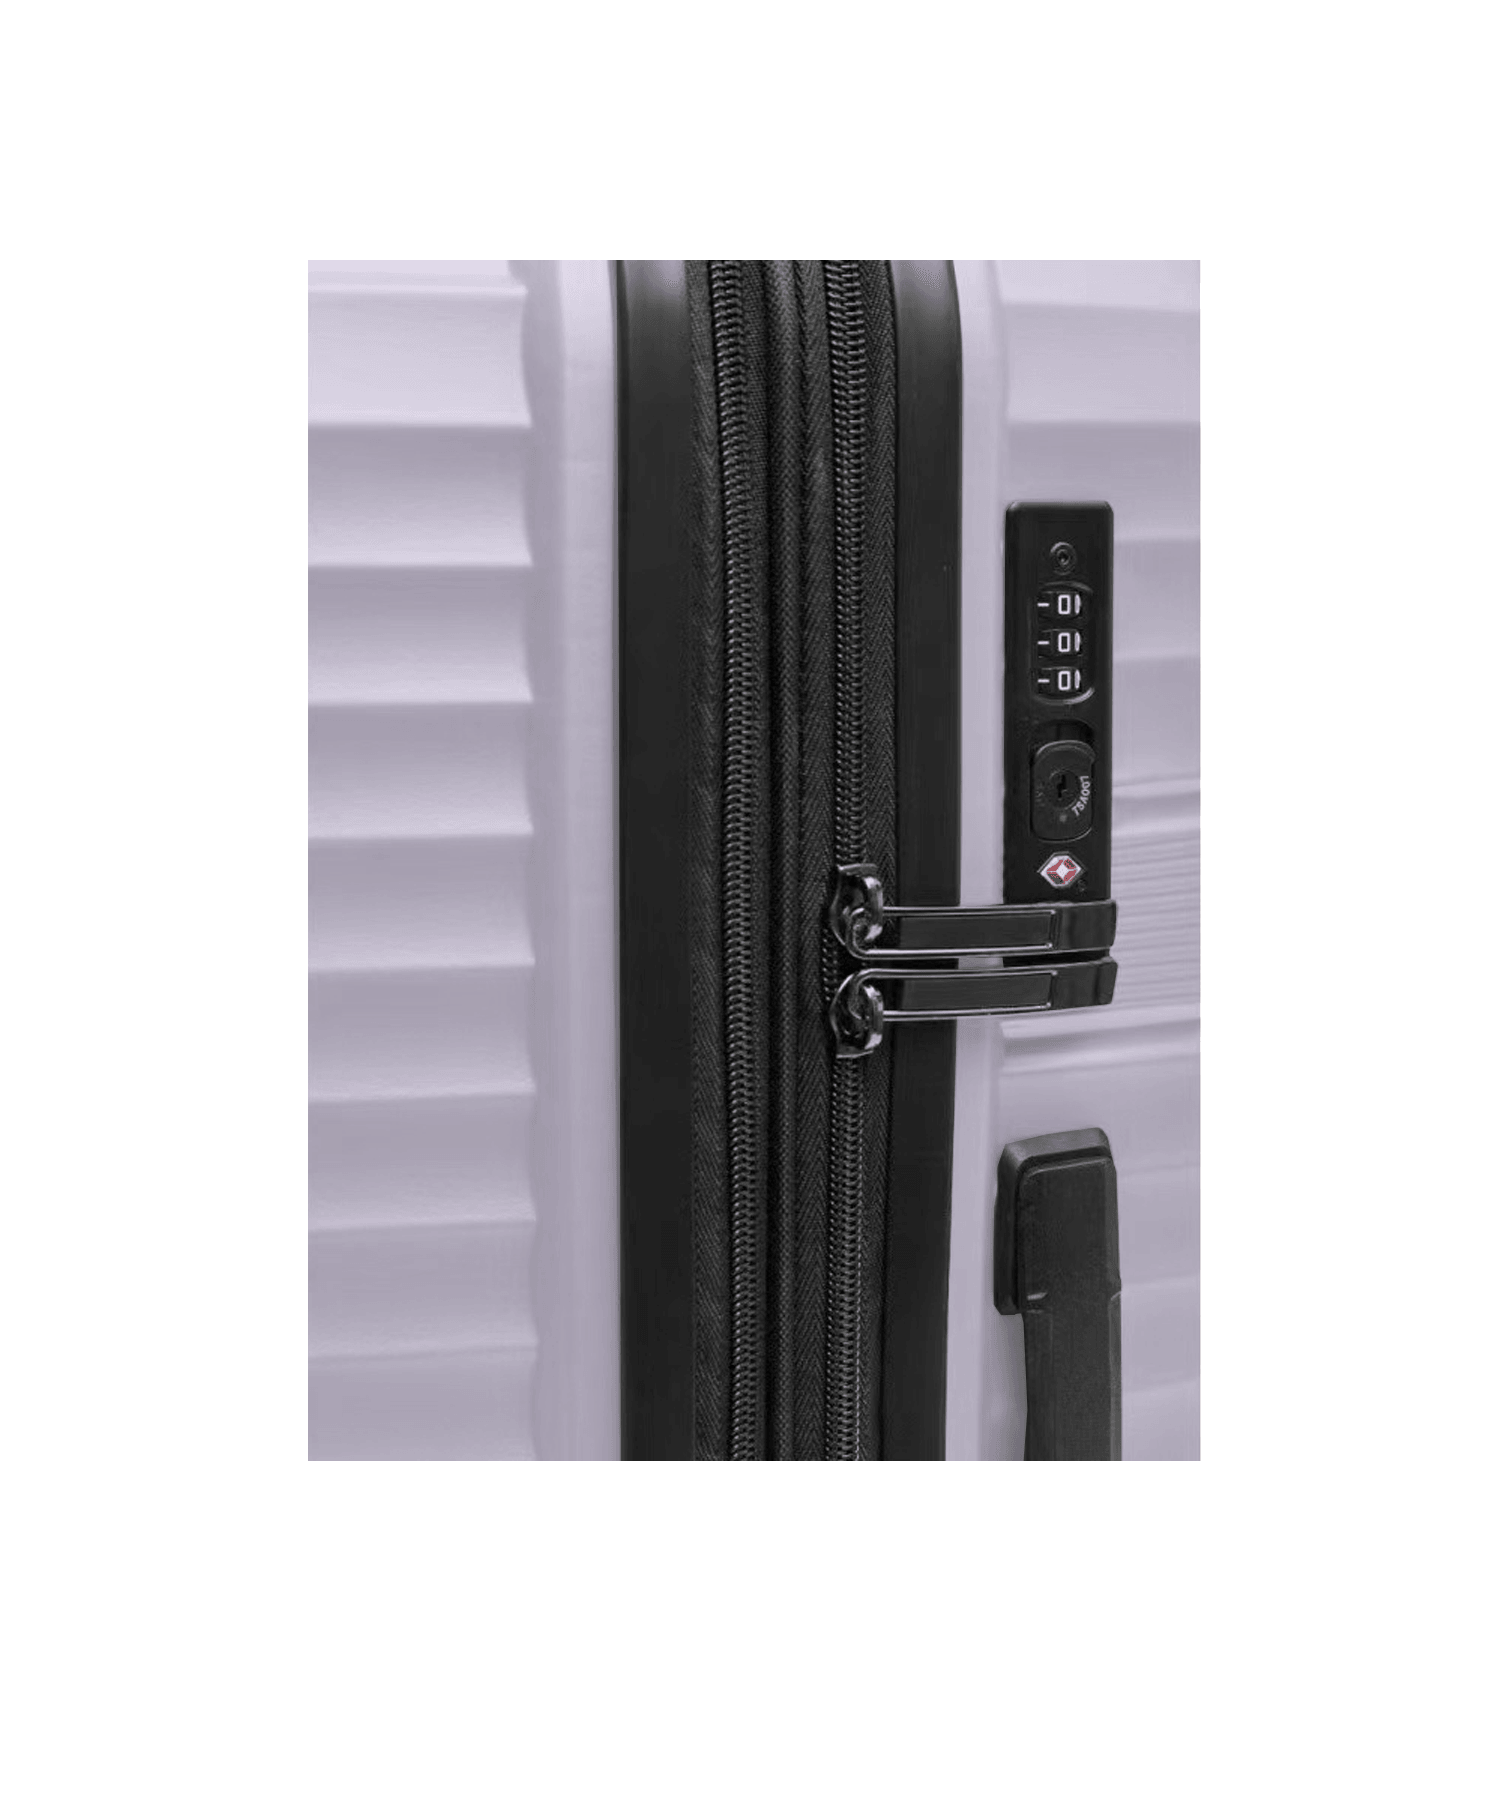 San Michelle Air Luxe 55cm Suitcase - San Michelle Bags suitcase nz